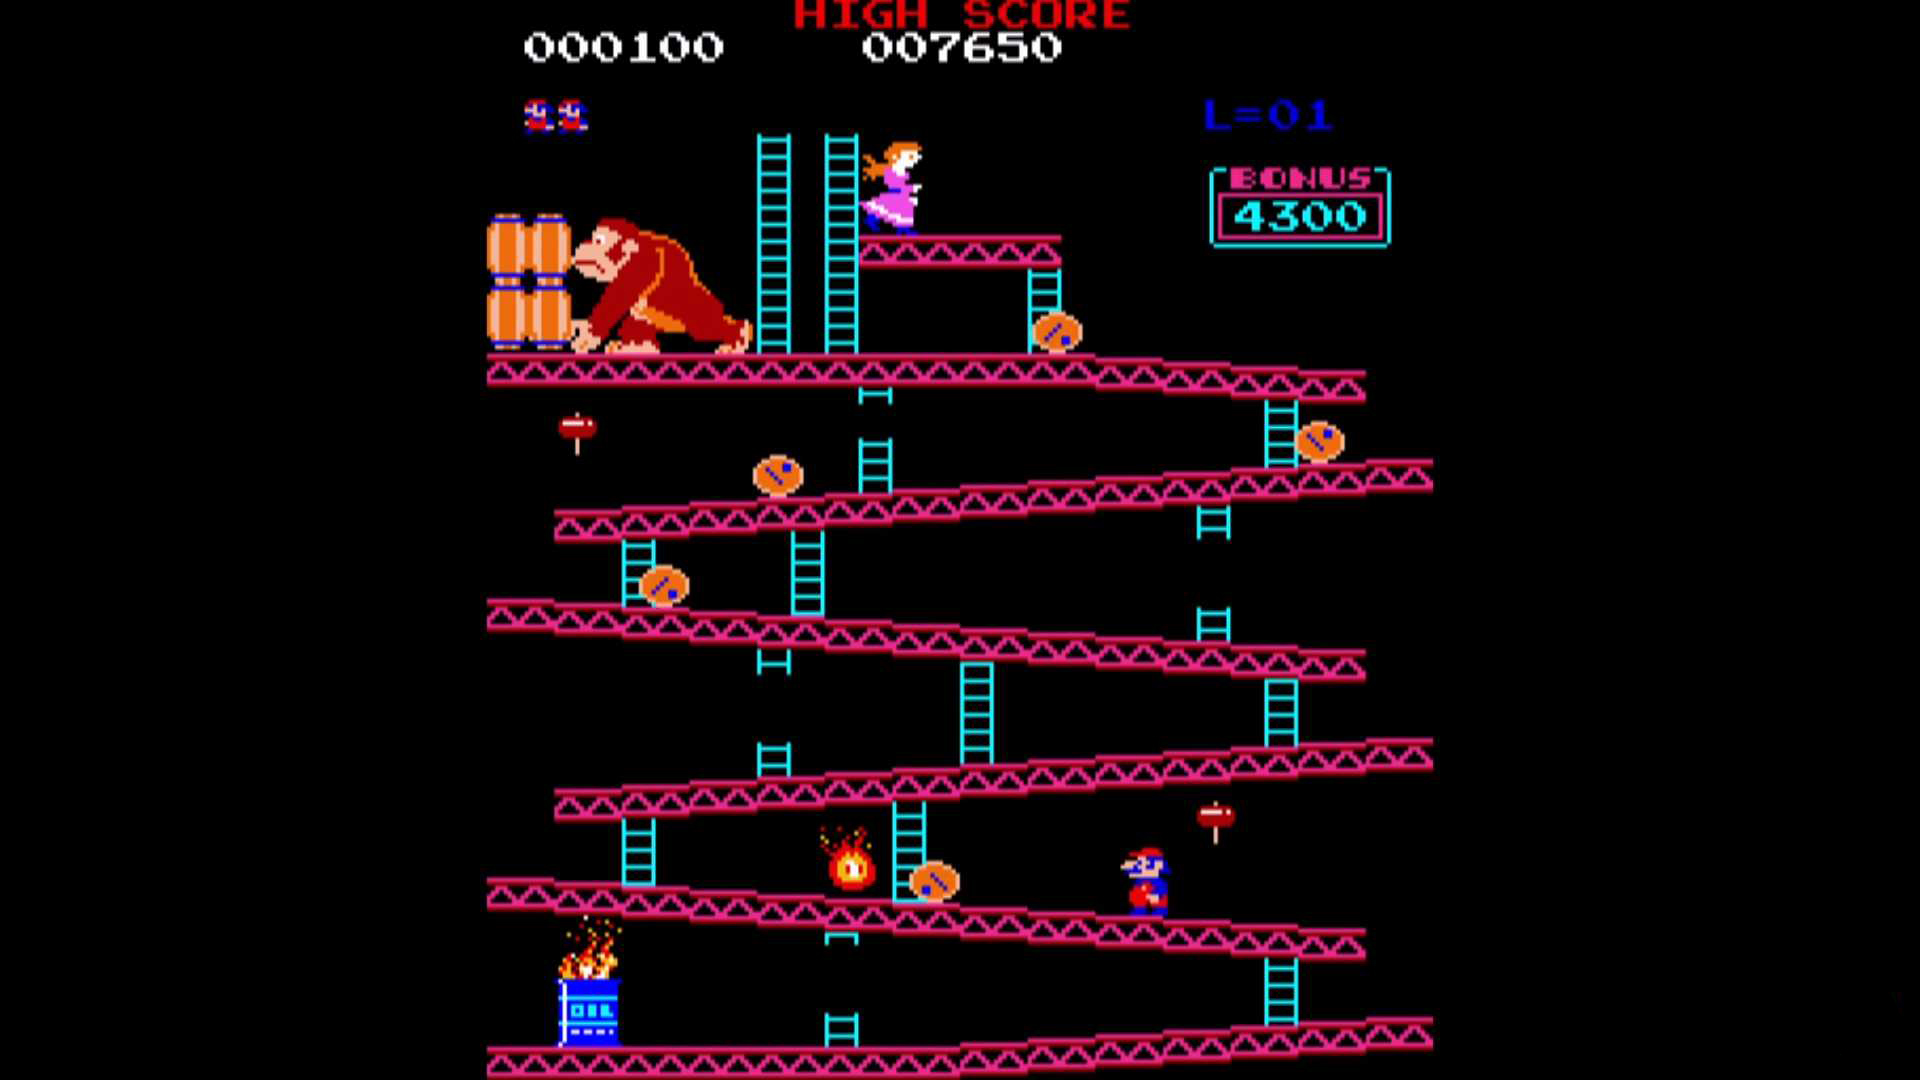 V hre Donkey Kong sa Mario snažil zachrániť svoju priateľku Pauline. Tento koncept sa s istými obmenami objavil aj v jeho vlastnej sérii.